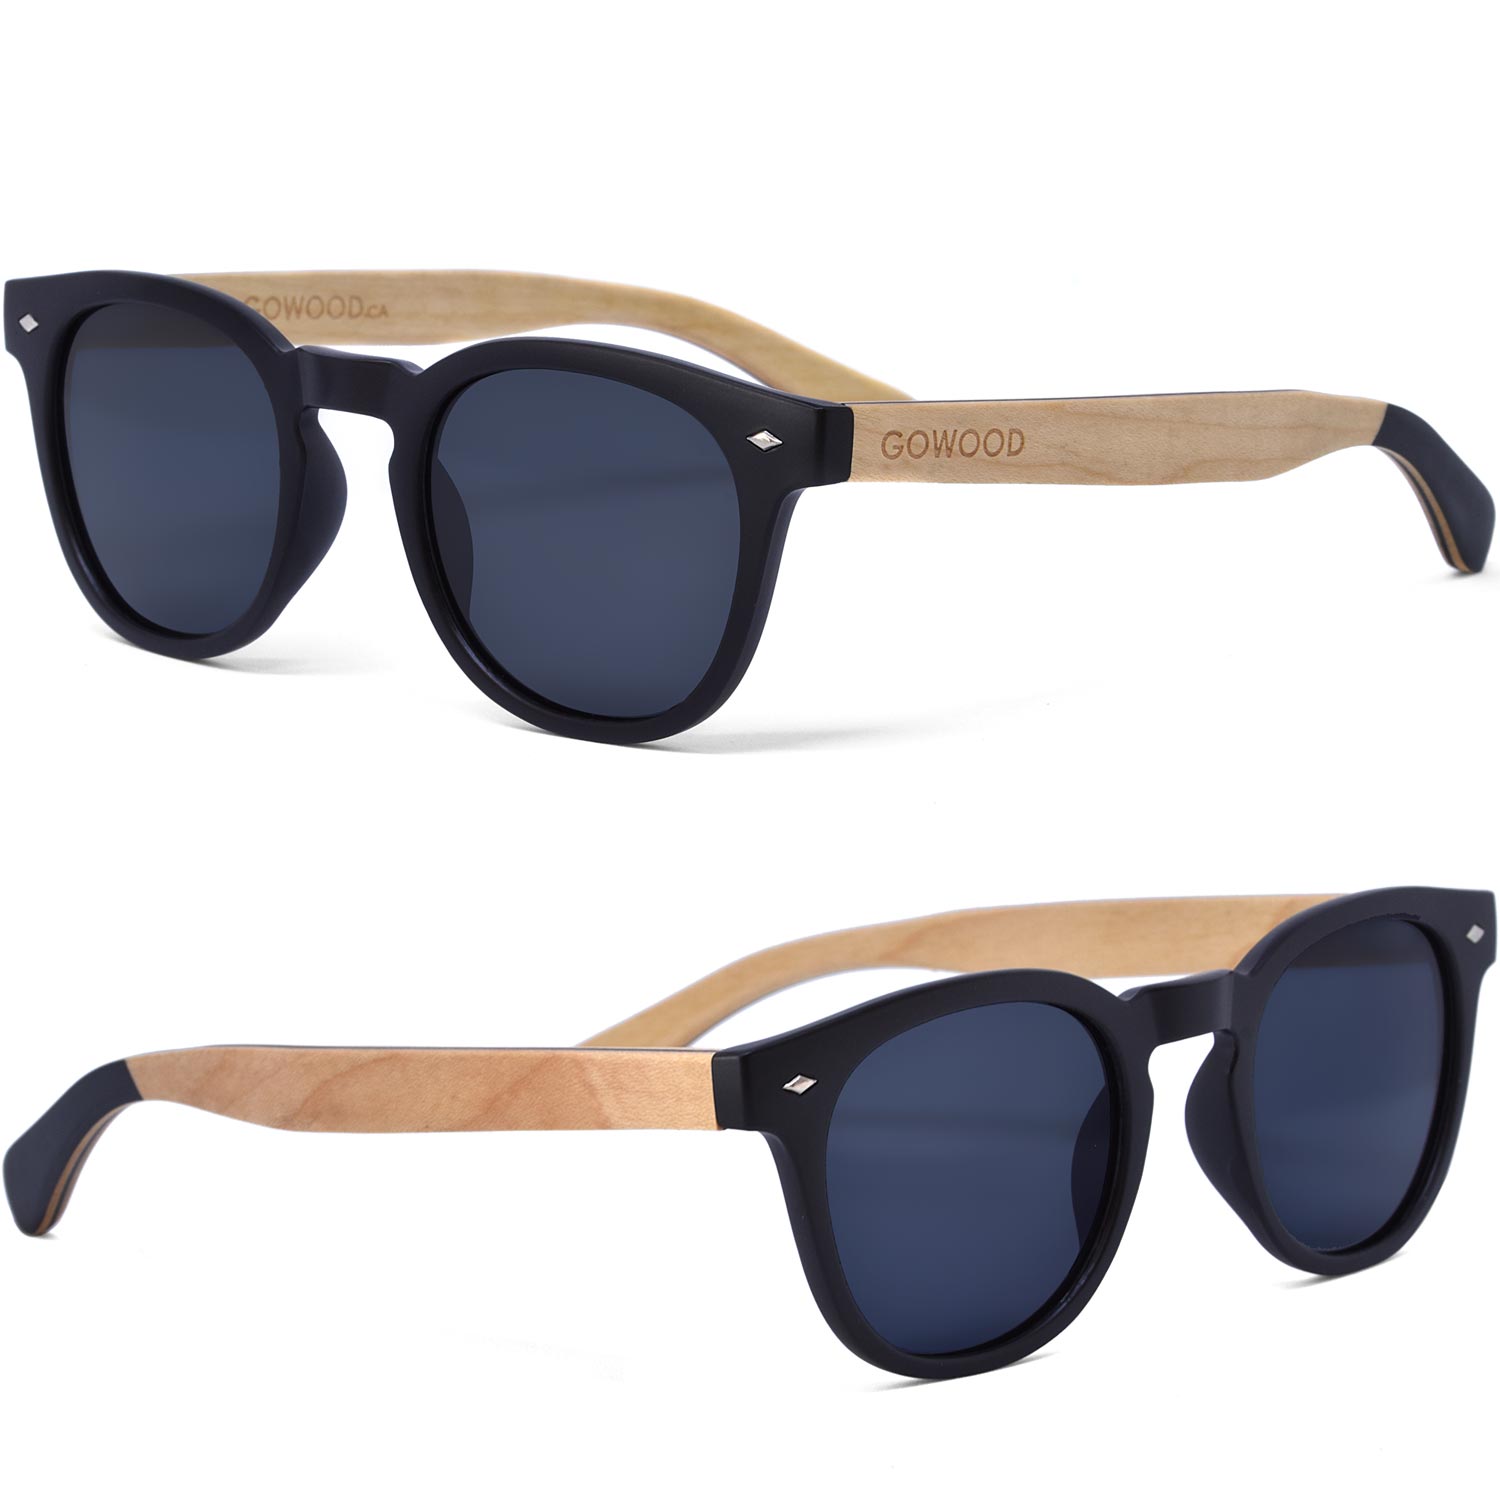 Round maple wood sunglasses black polarized lenses sides